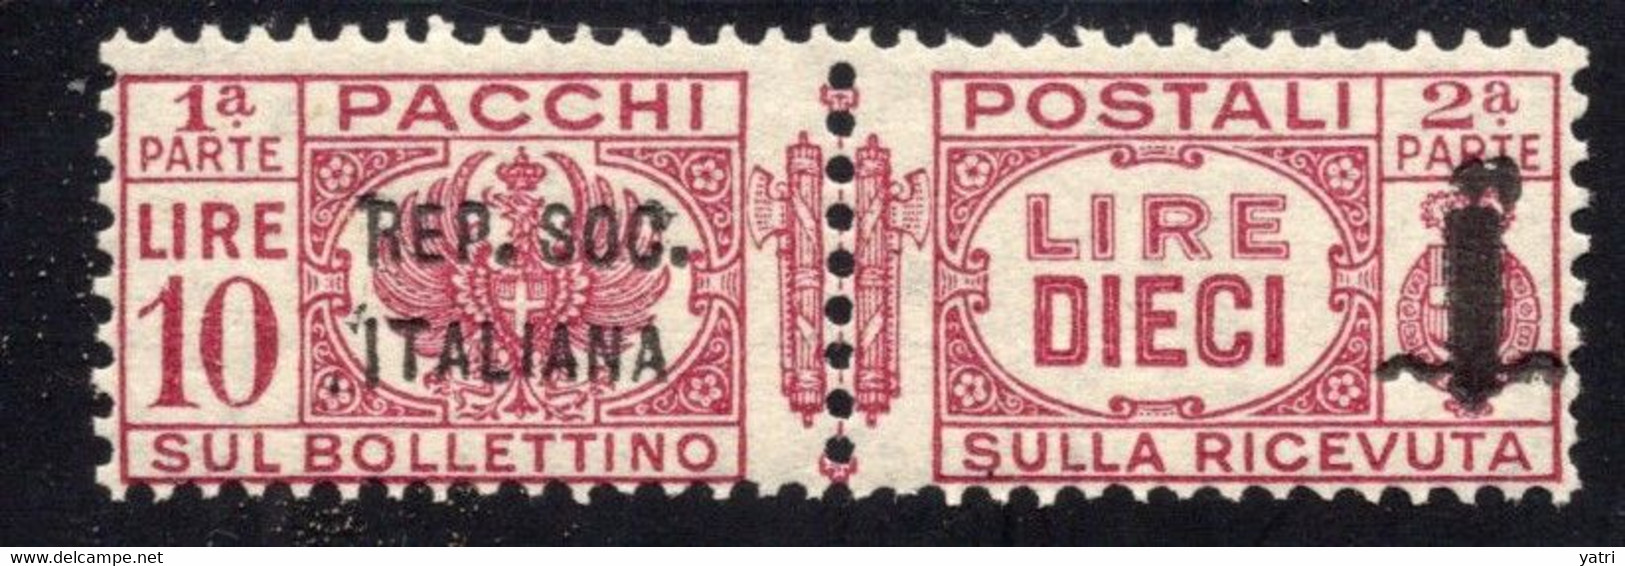 Repubblica Sociale (1944) - Pacchi Postali, 4 Lire ** (firmato Ferrario) - Postal Parcels